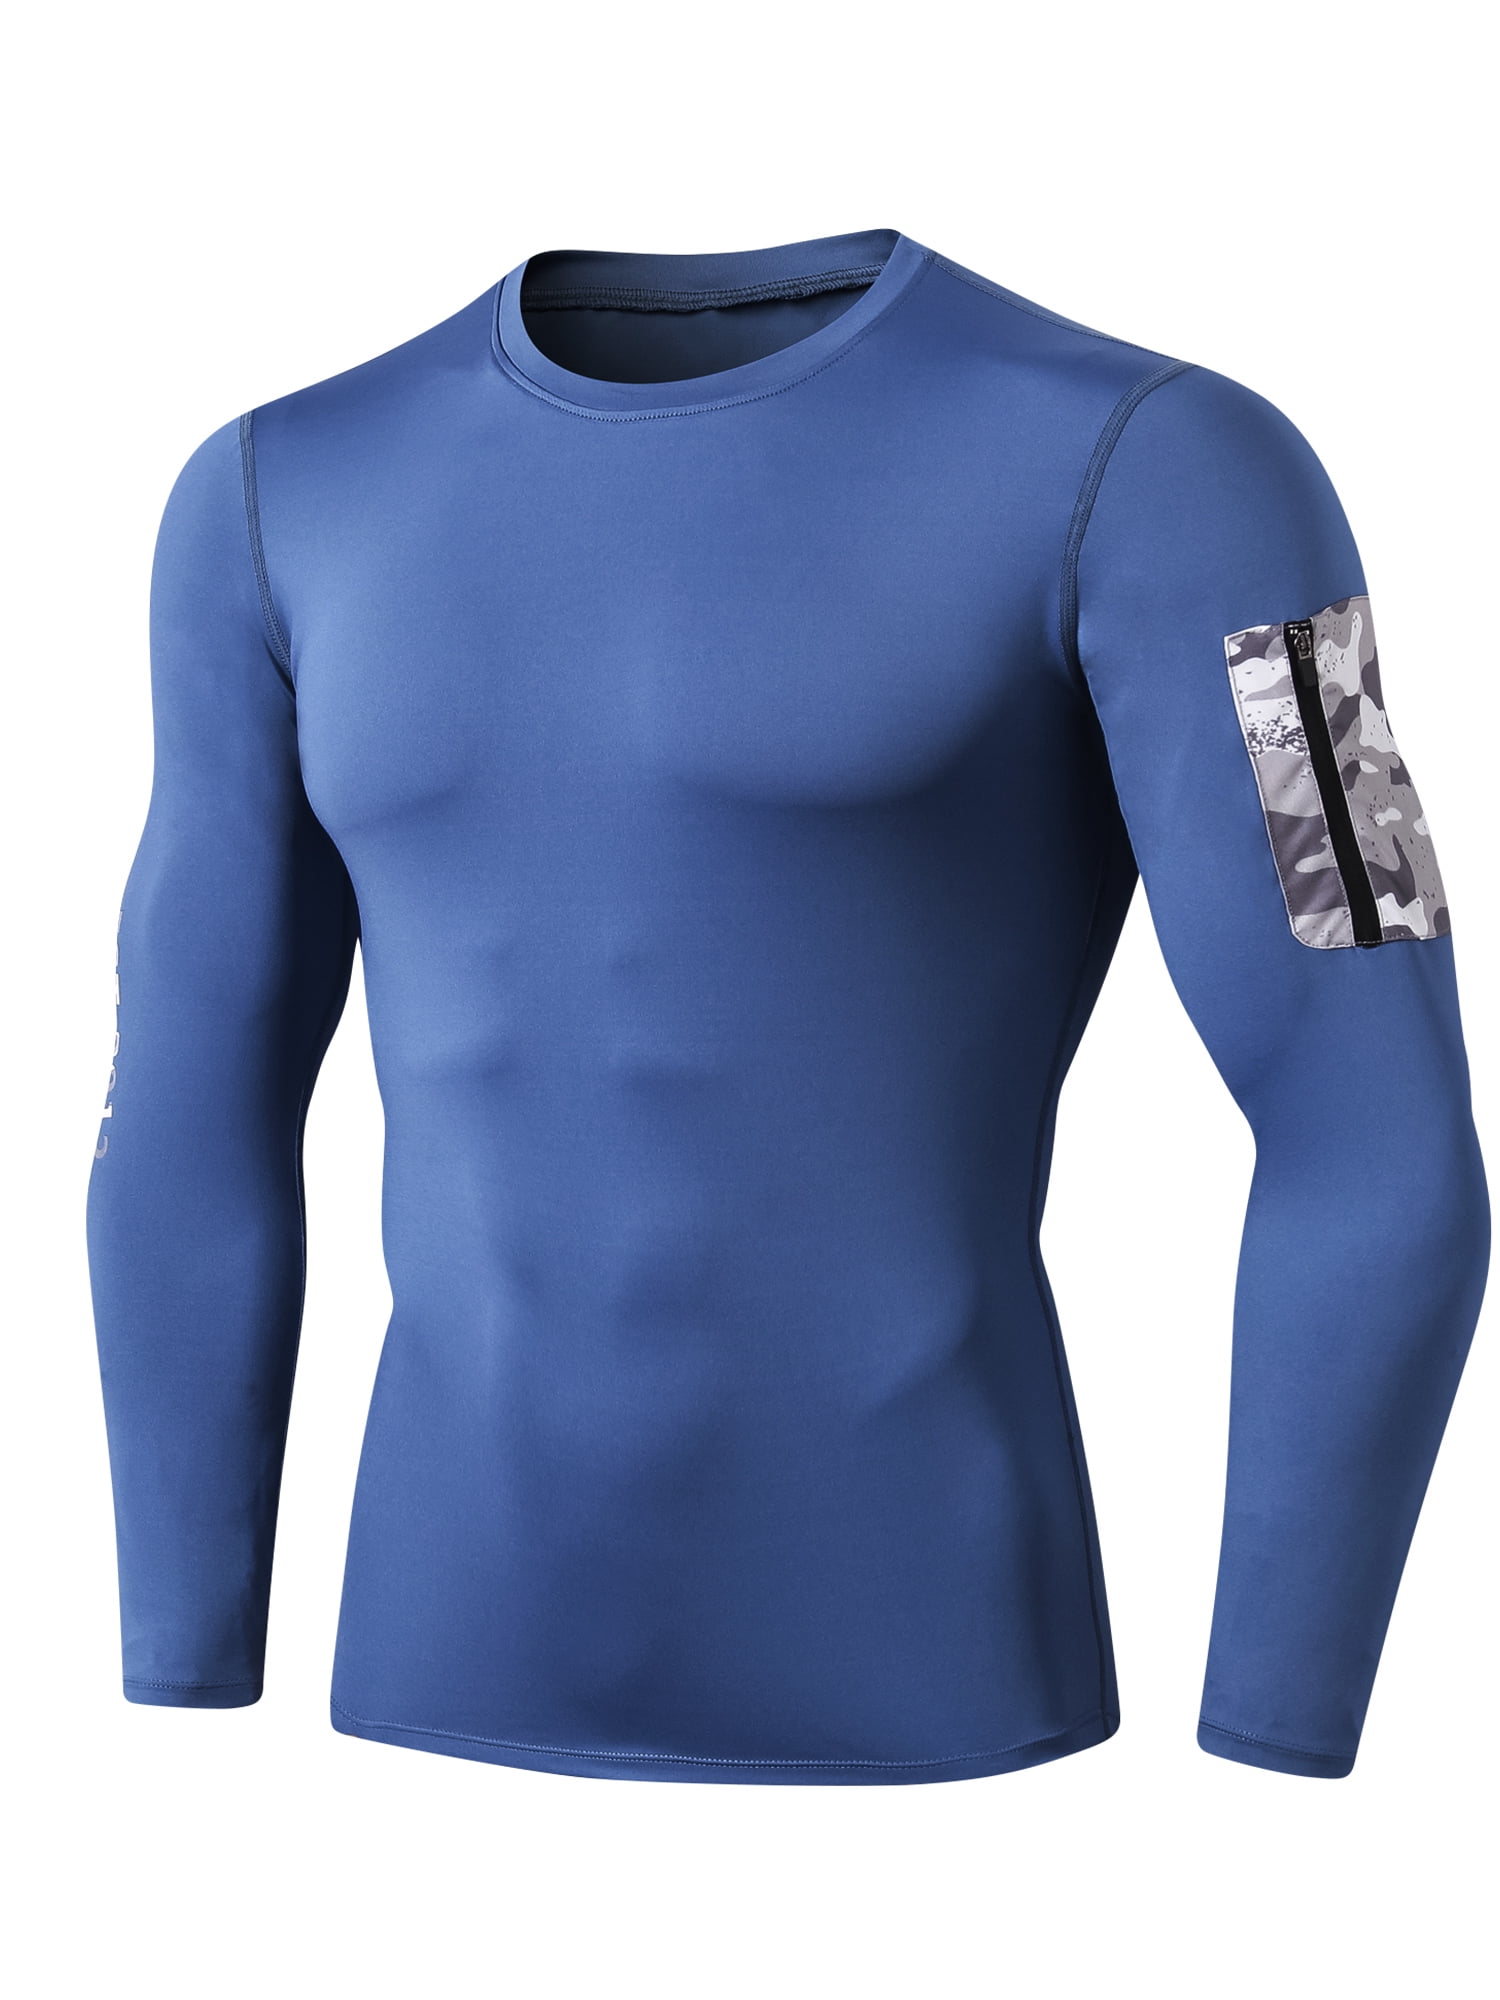 Mens Compression Baselayer Short/Shirt Skin Tight Breathable Sports Rash Guard 